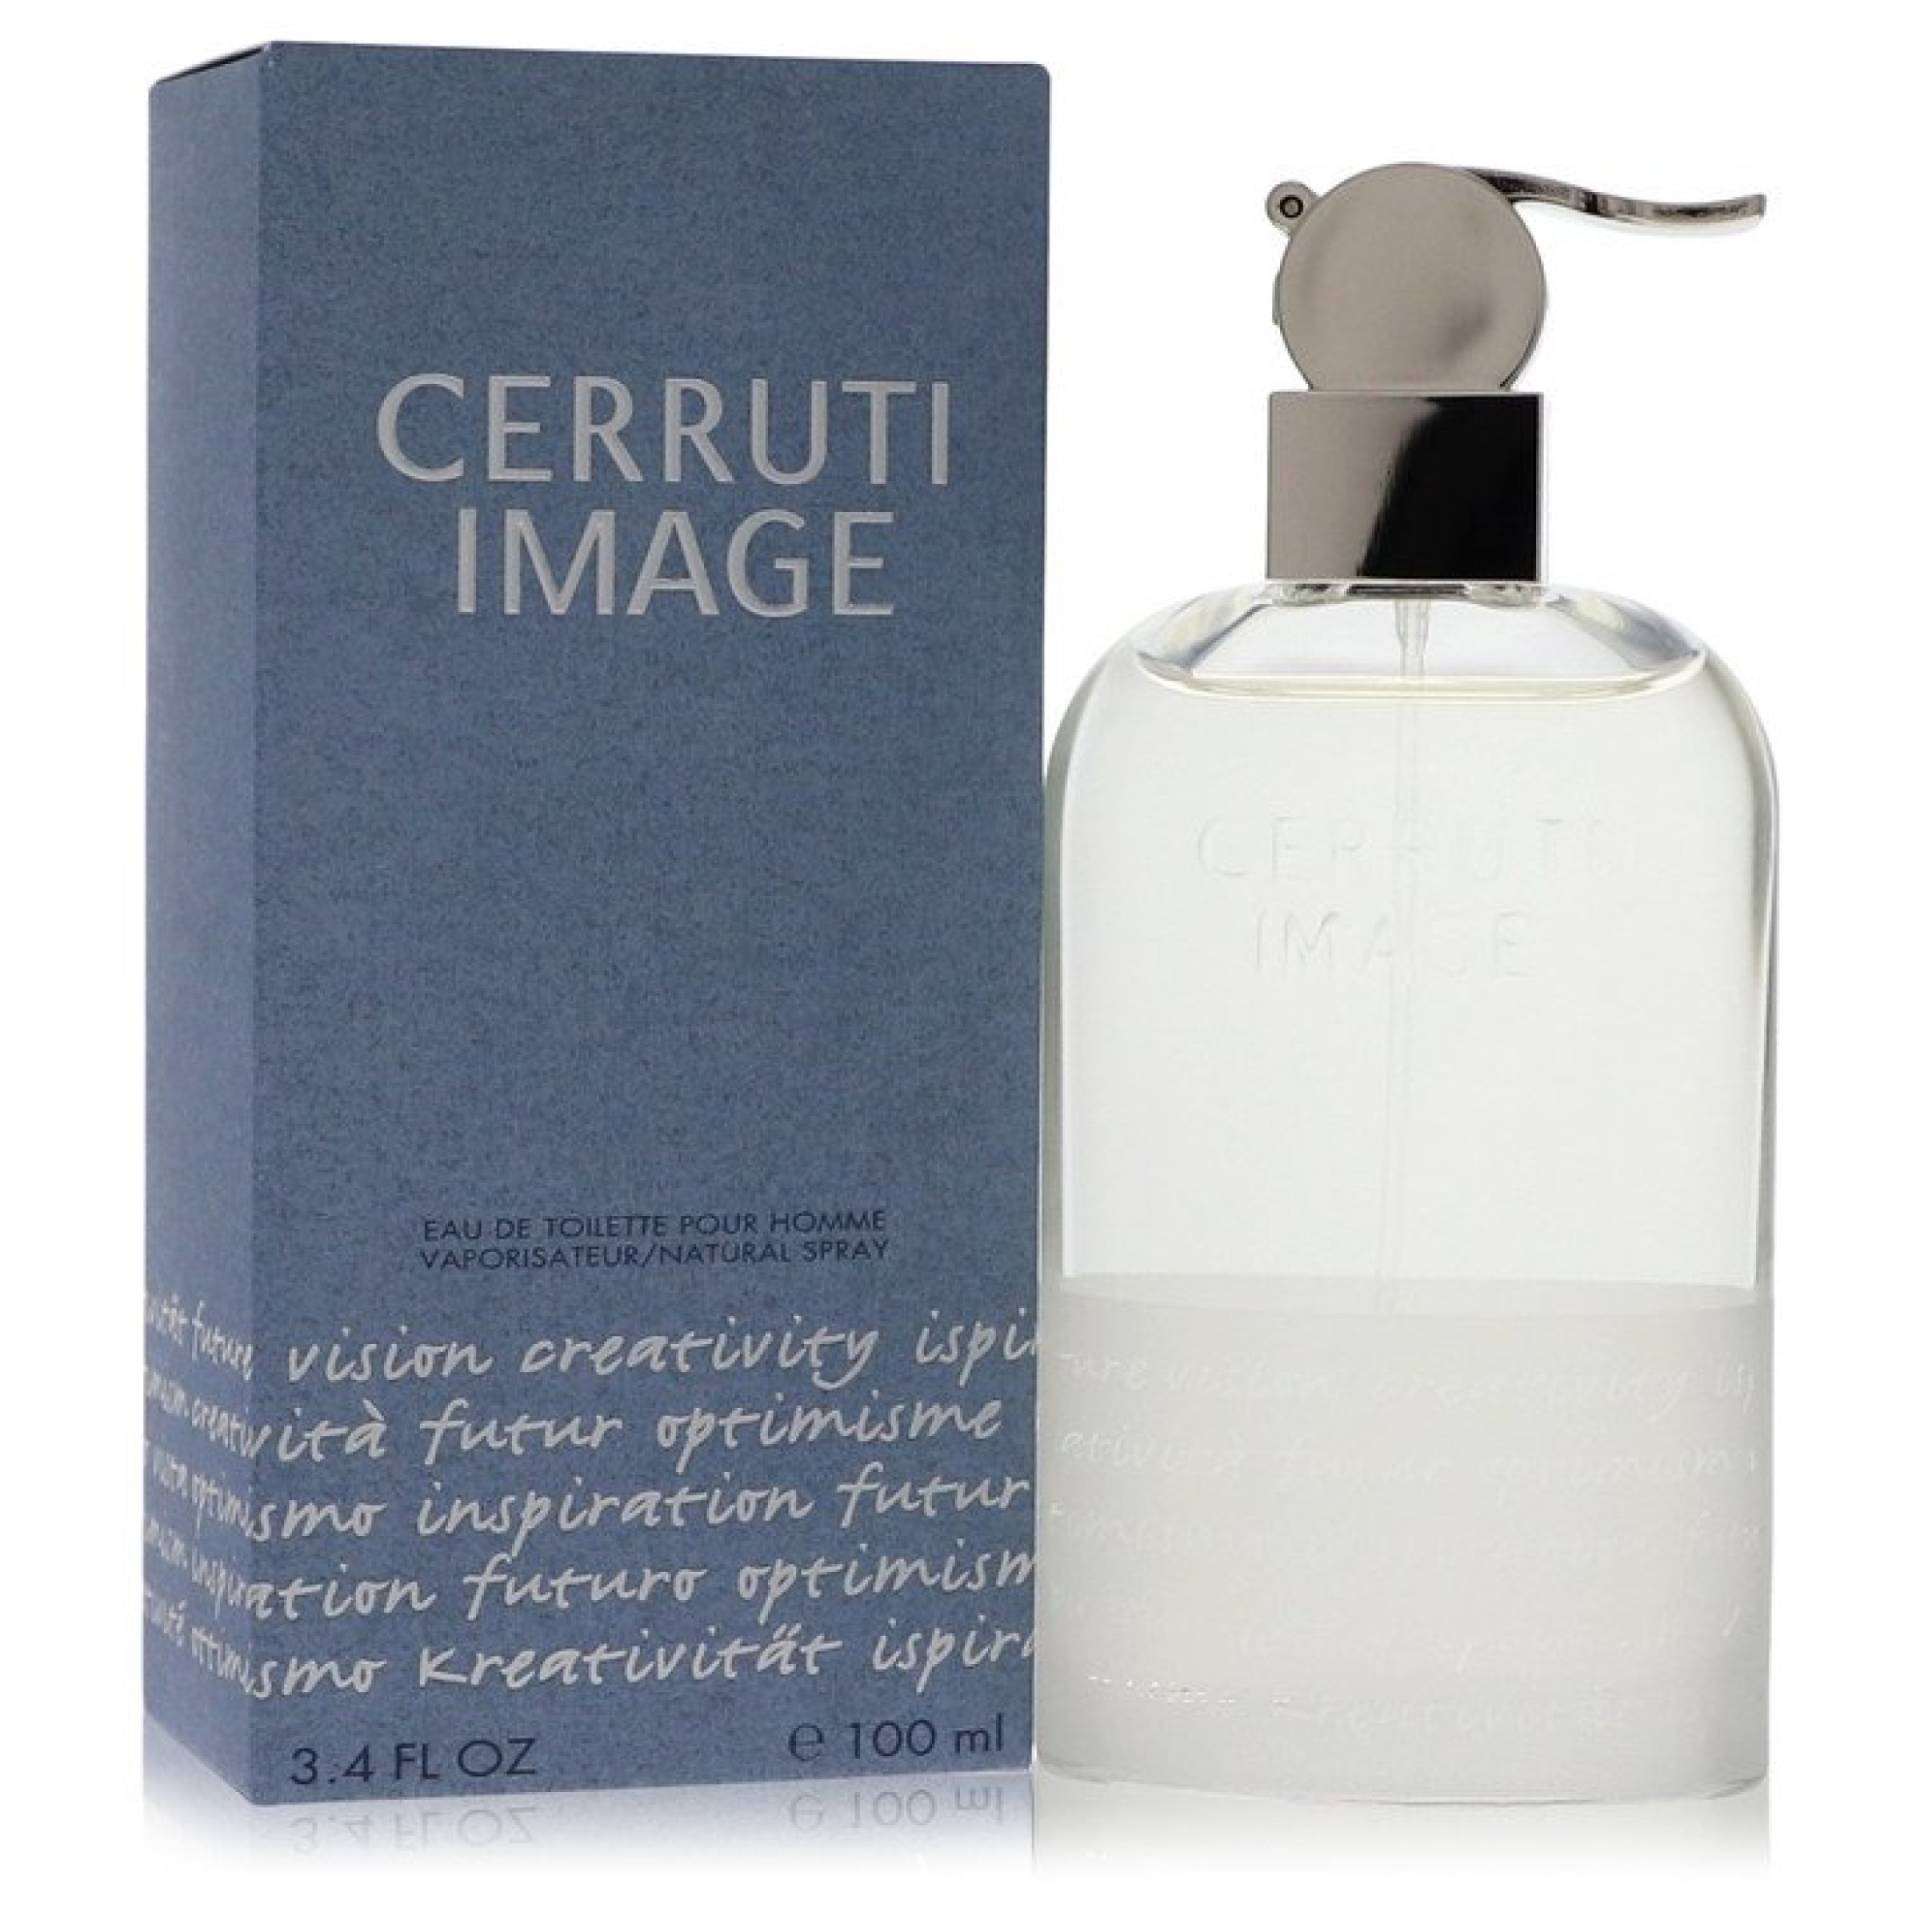 Nino Cerruti IMAGE Eau De Toilette Spray 100 ml von Nino Cerruti